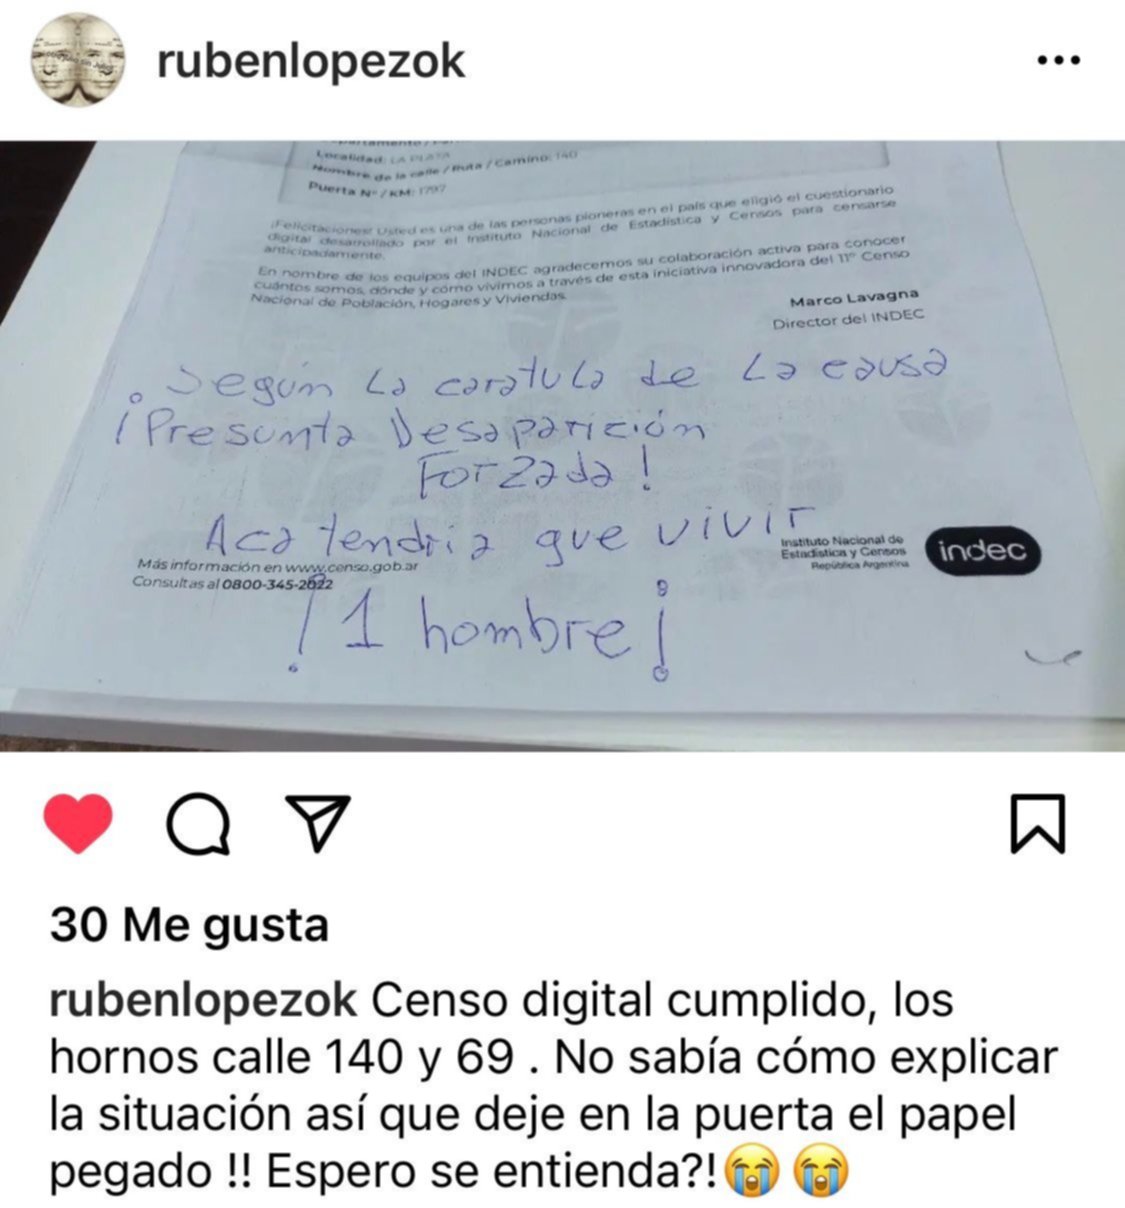 "Acá tendría que vivir un hombre": la nota del hijo de Julio López en la puerta de su casa en Los Hornos